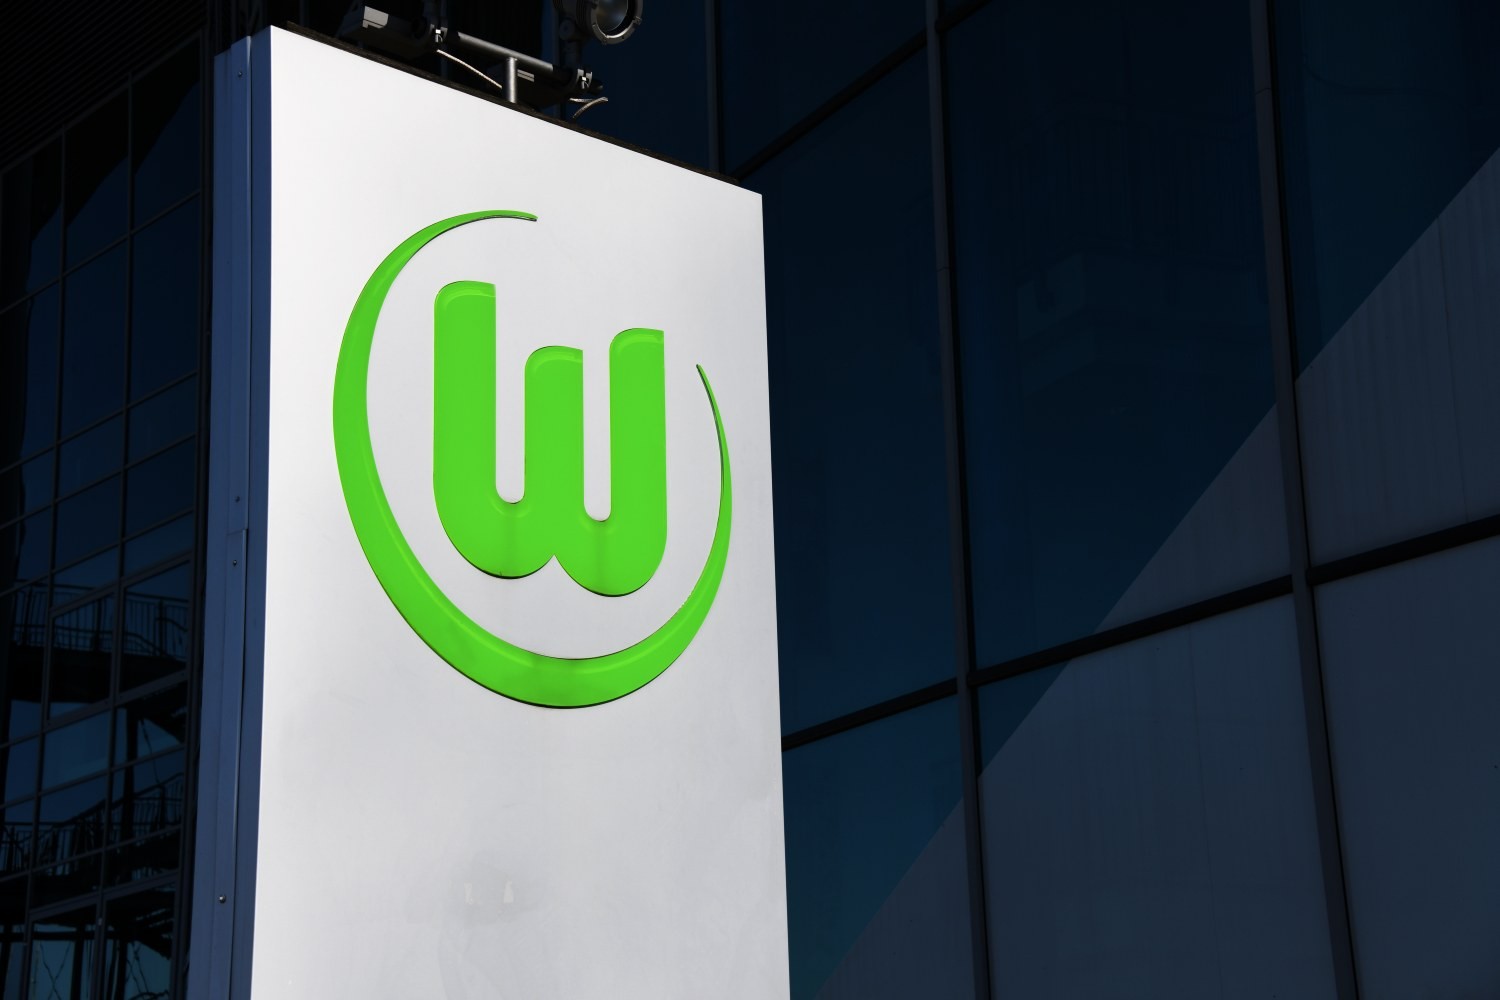 OFICJALNIE: Kilian Fischer w VfL Wolfsburg